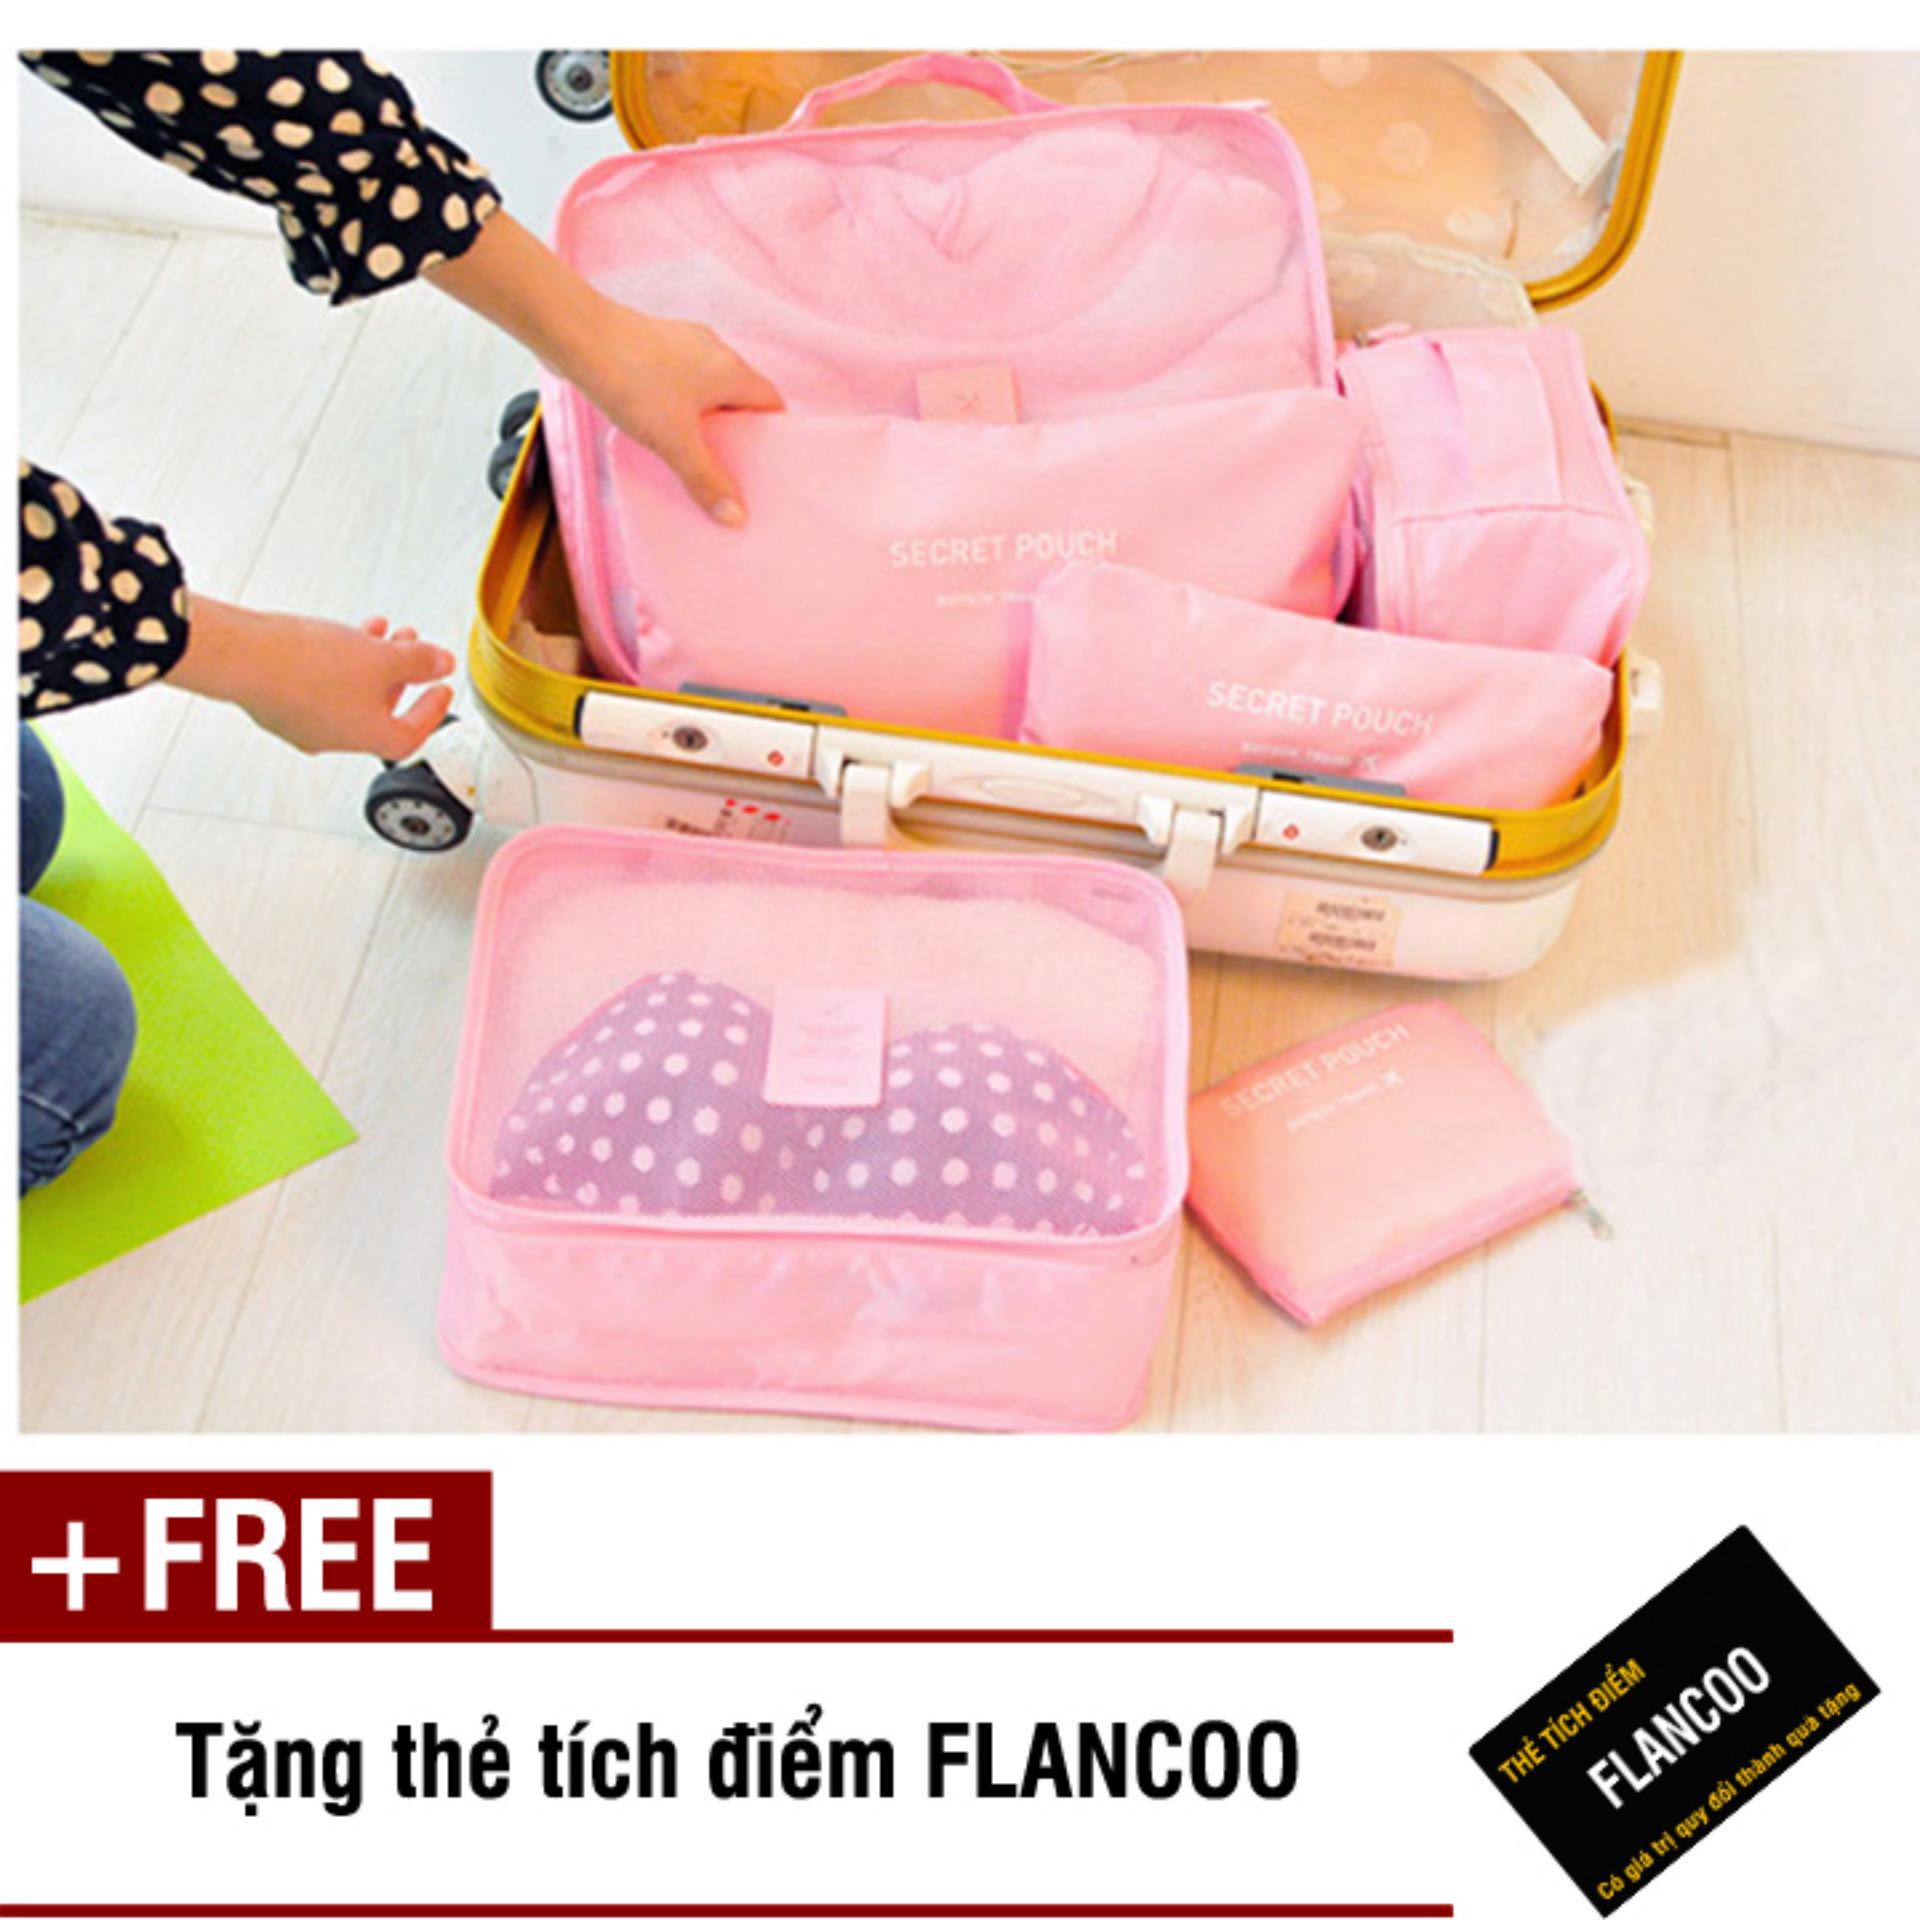 Bộ 6 túi đựng đồ đi du lịch Flancoo 3701 (Hồng) + Tặng kèm thẻ tích điểm Flancoo